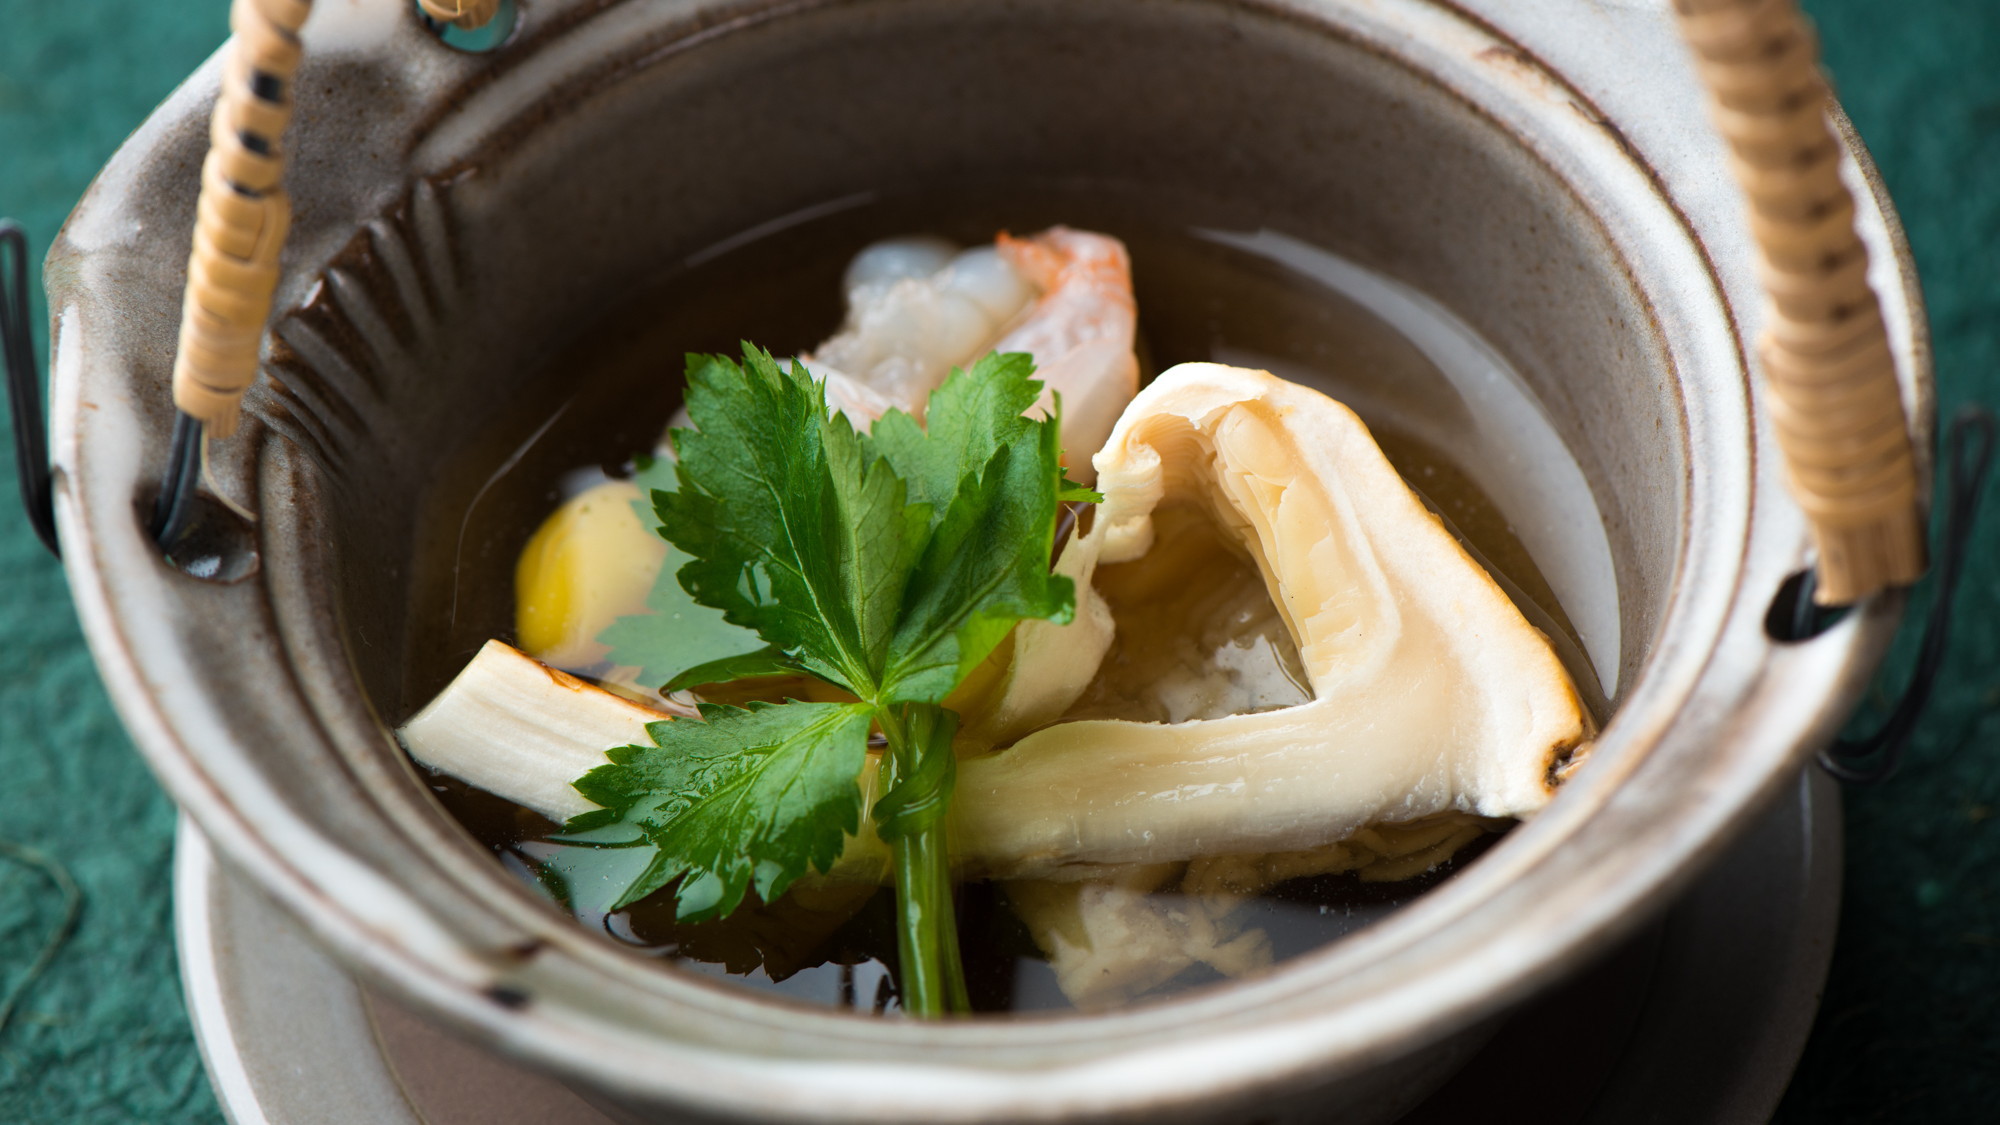 【和食膳・蒸し物例】上品な味わいの土瓶蒸し、季節の山菜を添えて